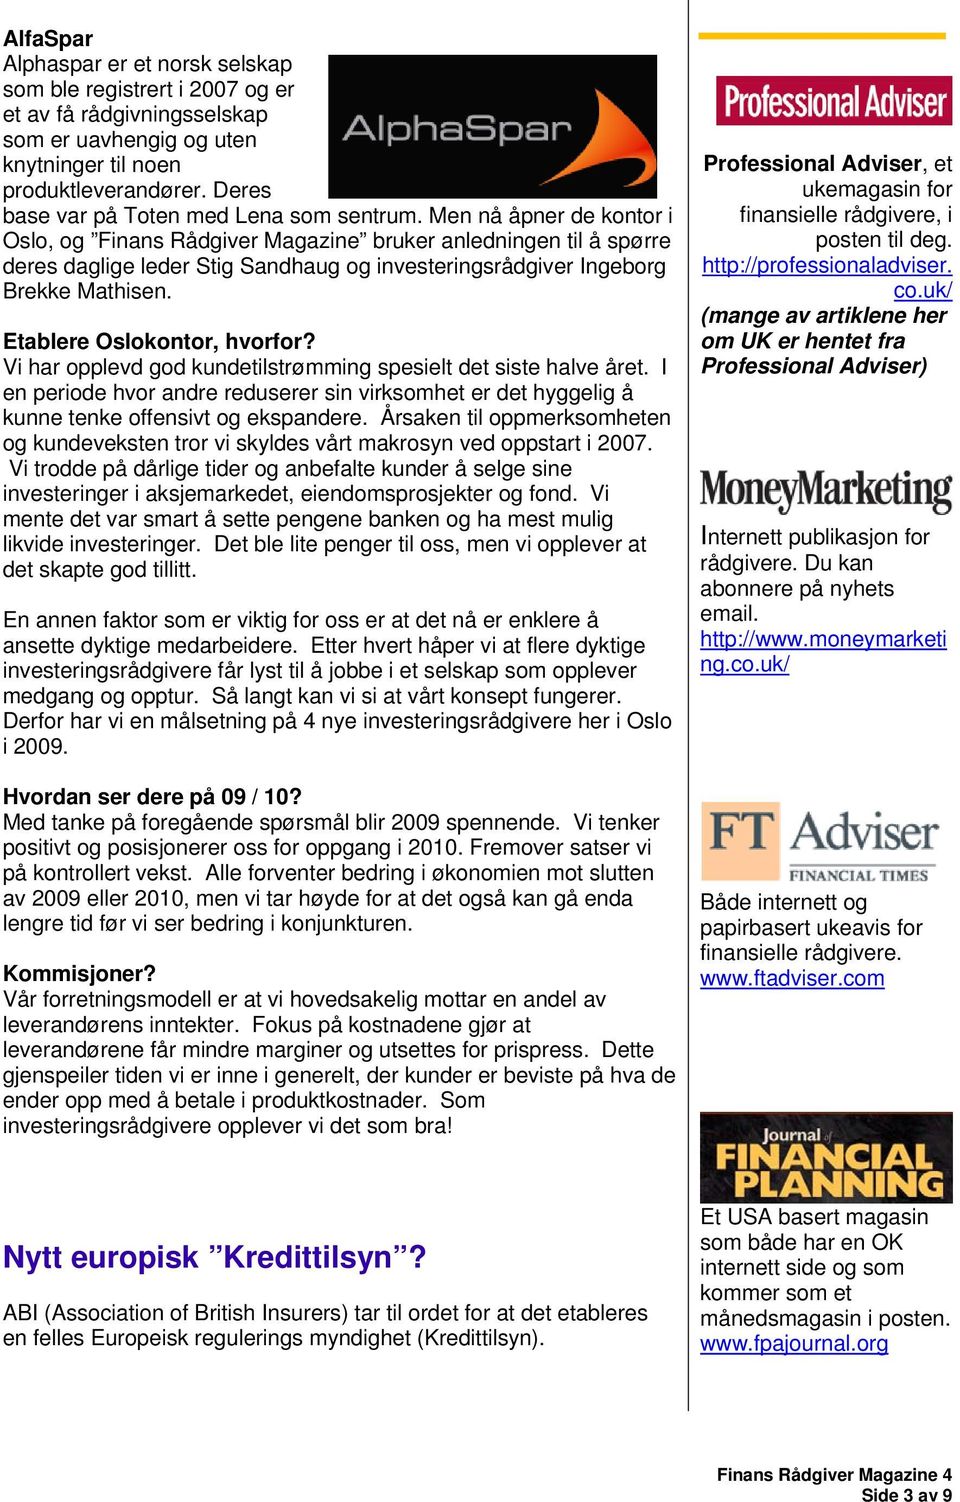 Men nå åpner de kontor i Oslo, og Finans Rådgiver Magazine bruker anledningen til å spørre deres daglige leder Stig Sandhaug og investeringsrådgiver Ingeborg Brekke Mathisen.